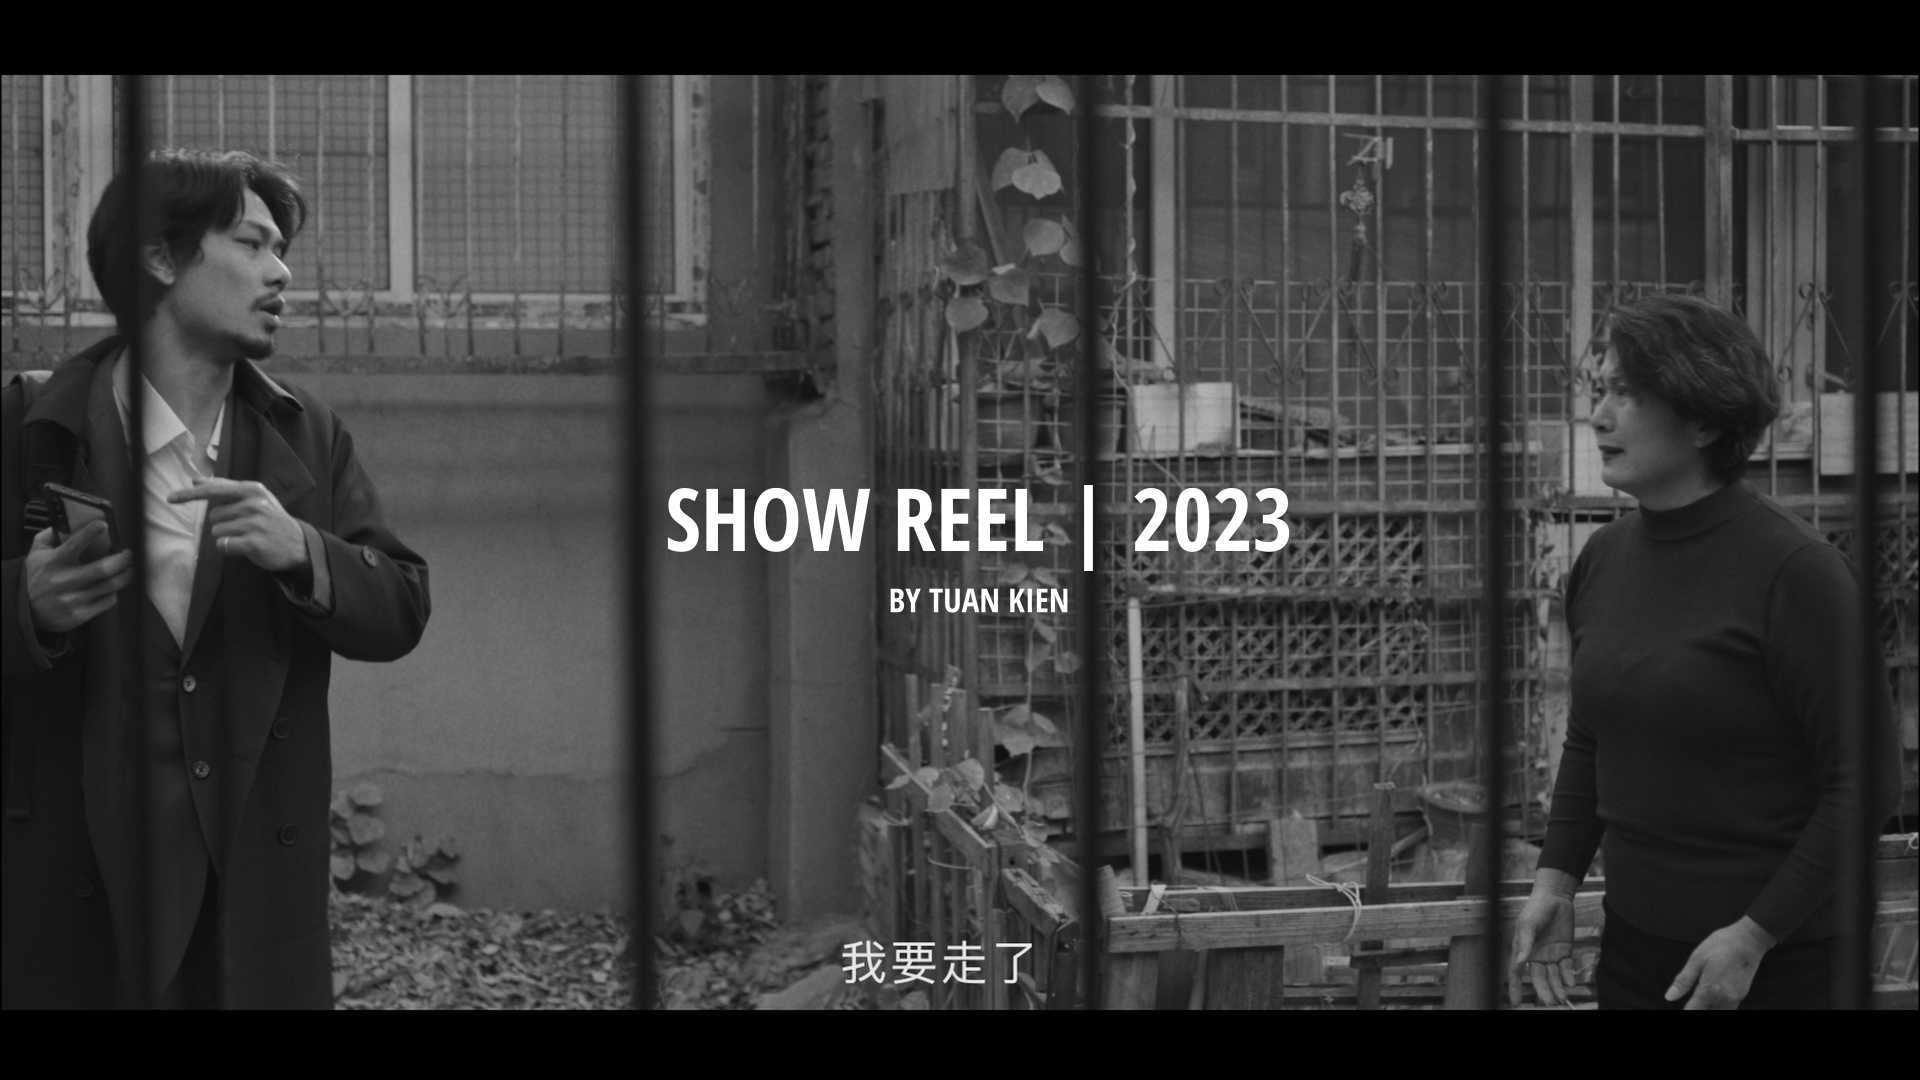 Showreel 2023 by Tuan Kien